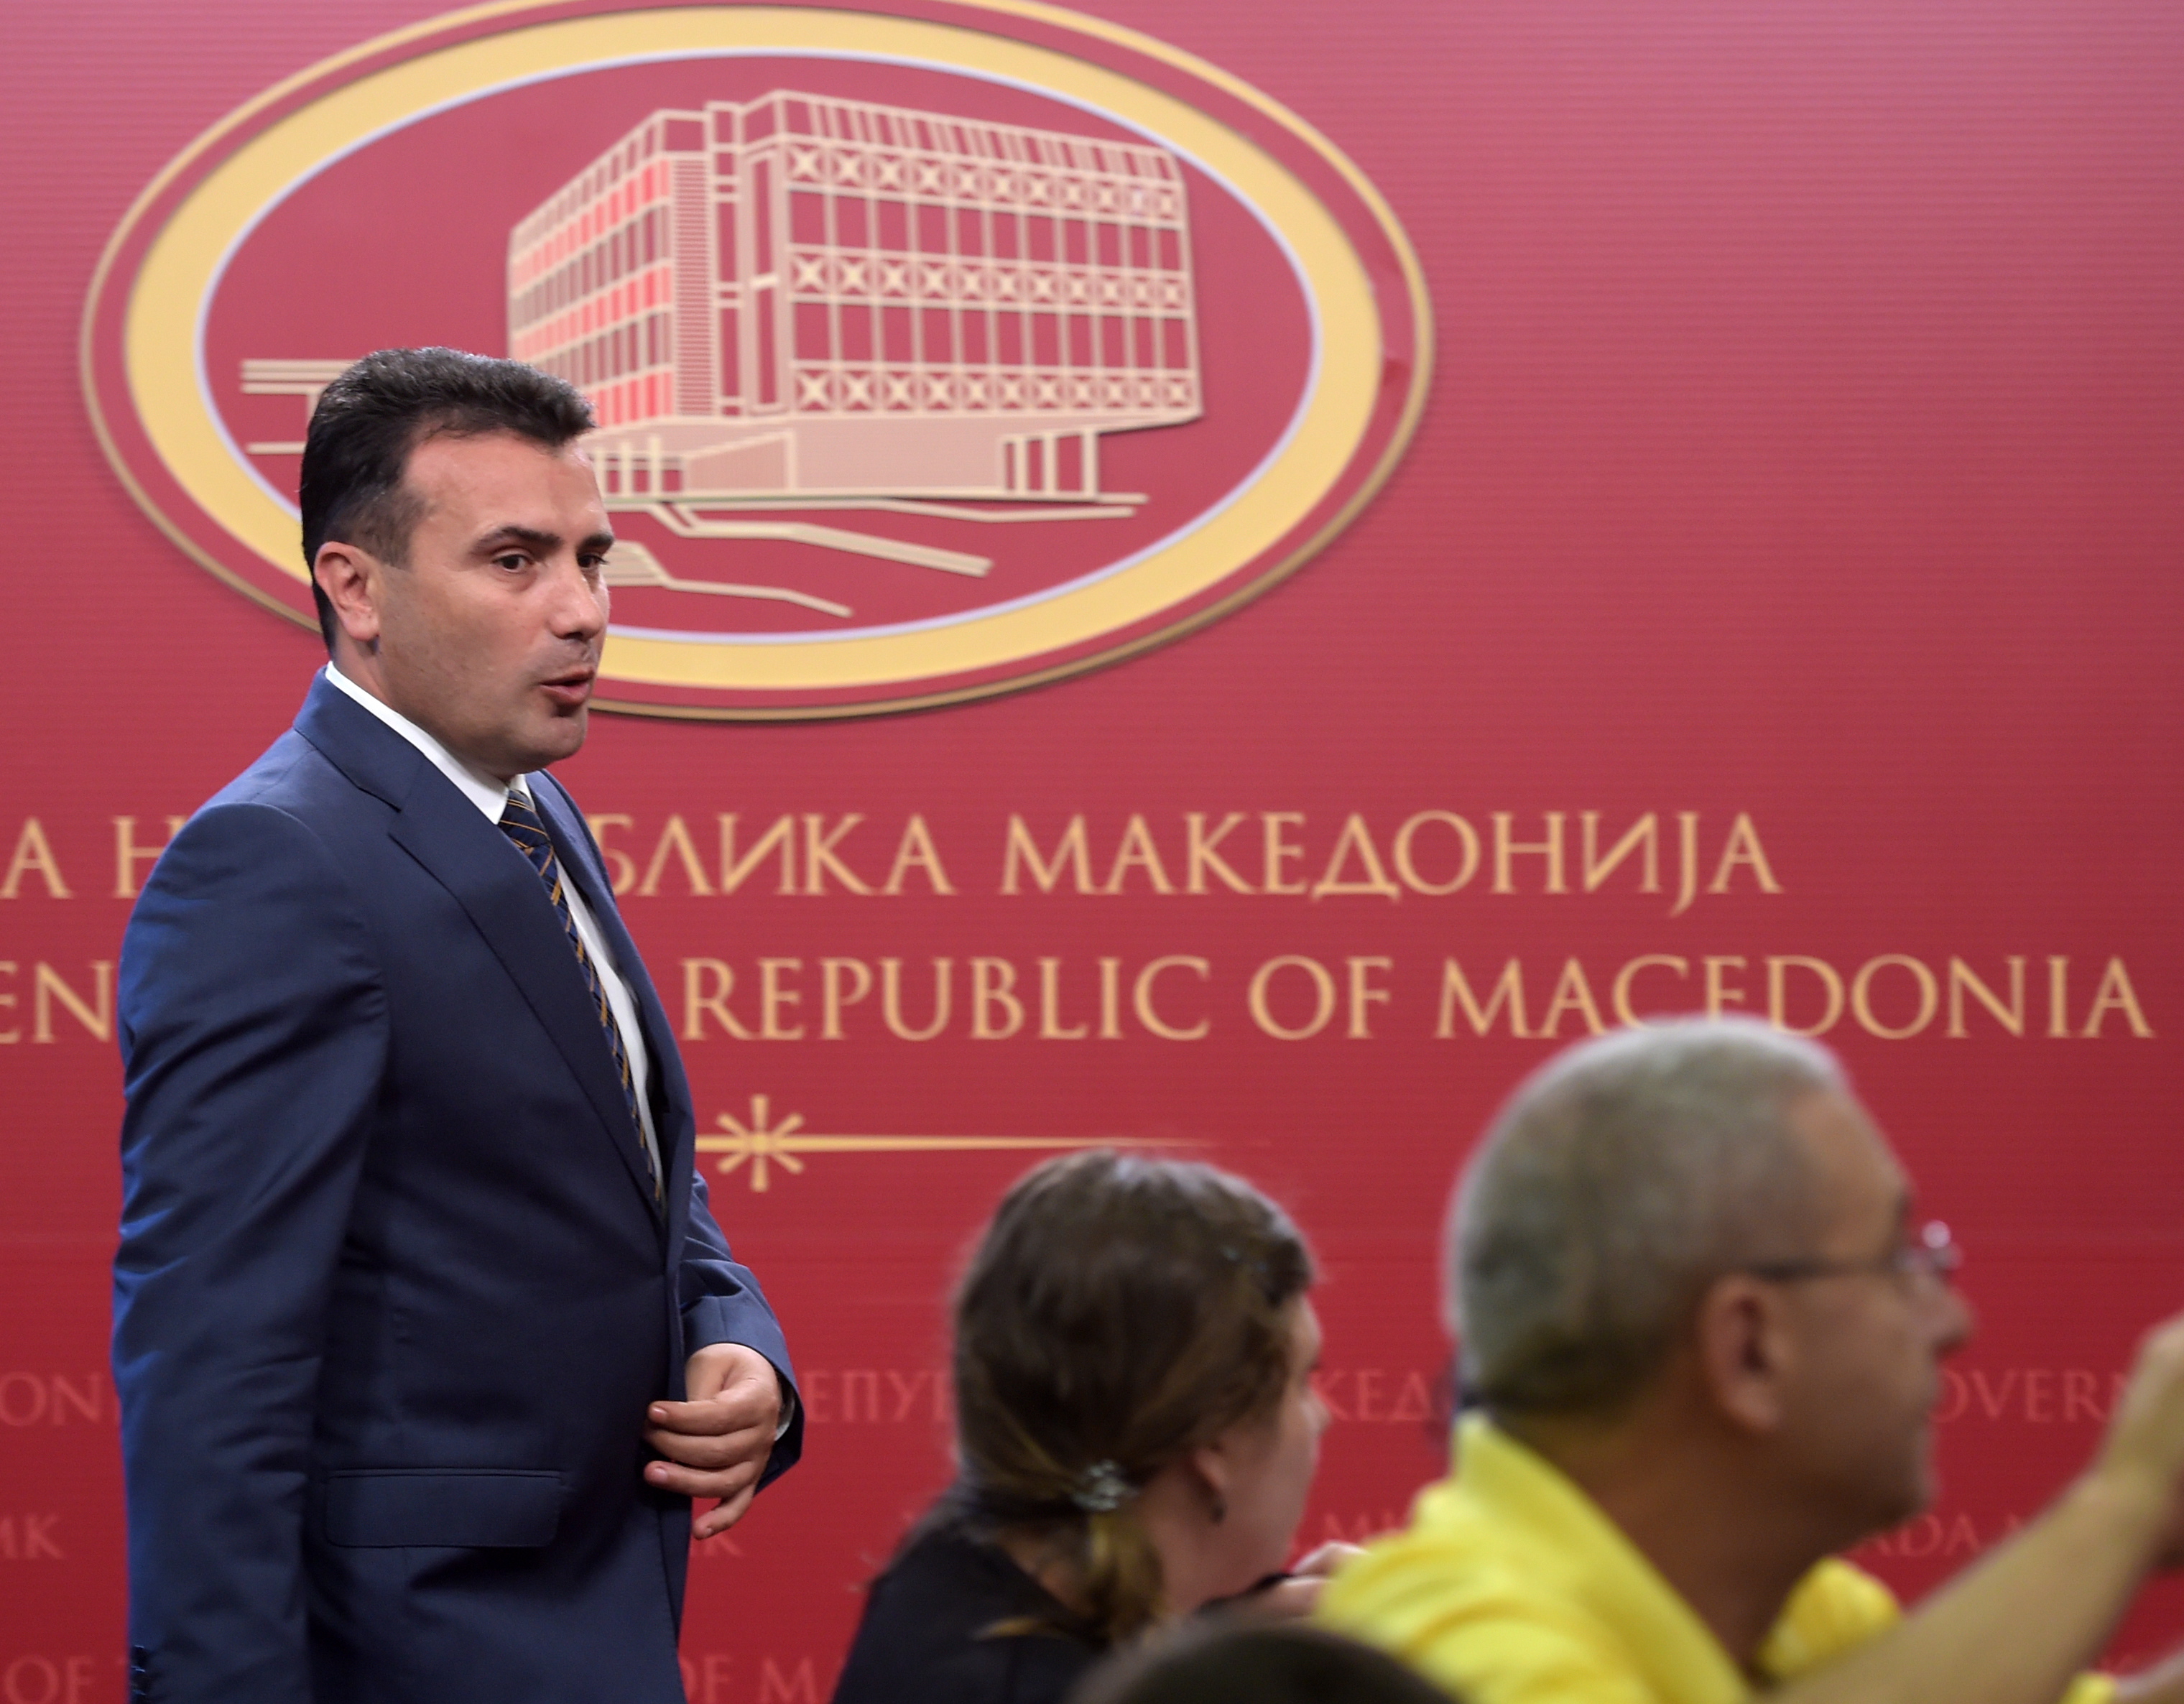 πΓΔΜ – Δημοκόπηση: Προηγείται το «ναι» – Οι πολίτες αποδέχονταi την Συμφωνία με την Ελλάδα και την ένταξη σε ΕΕ και NATO